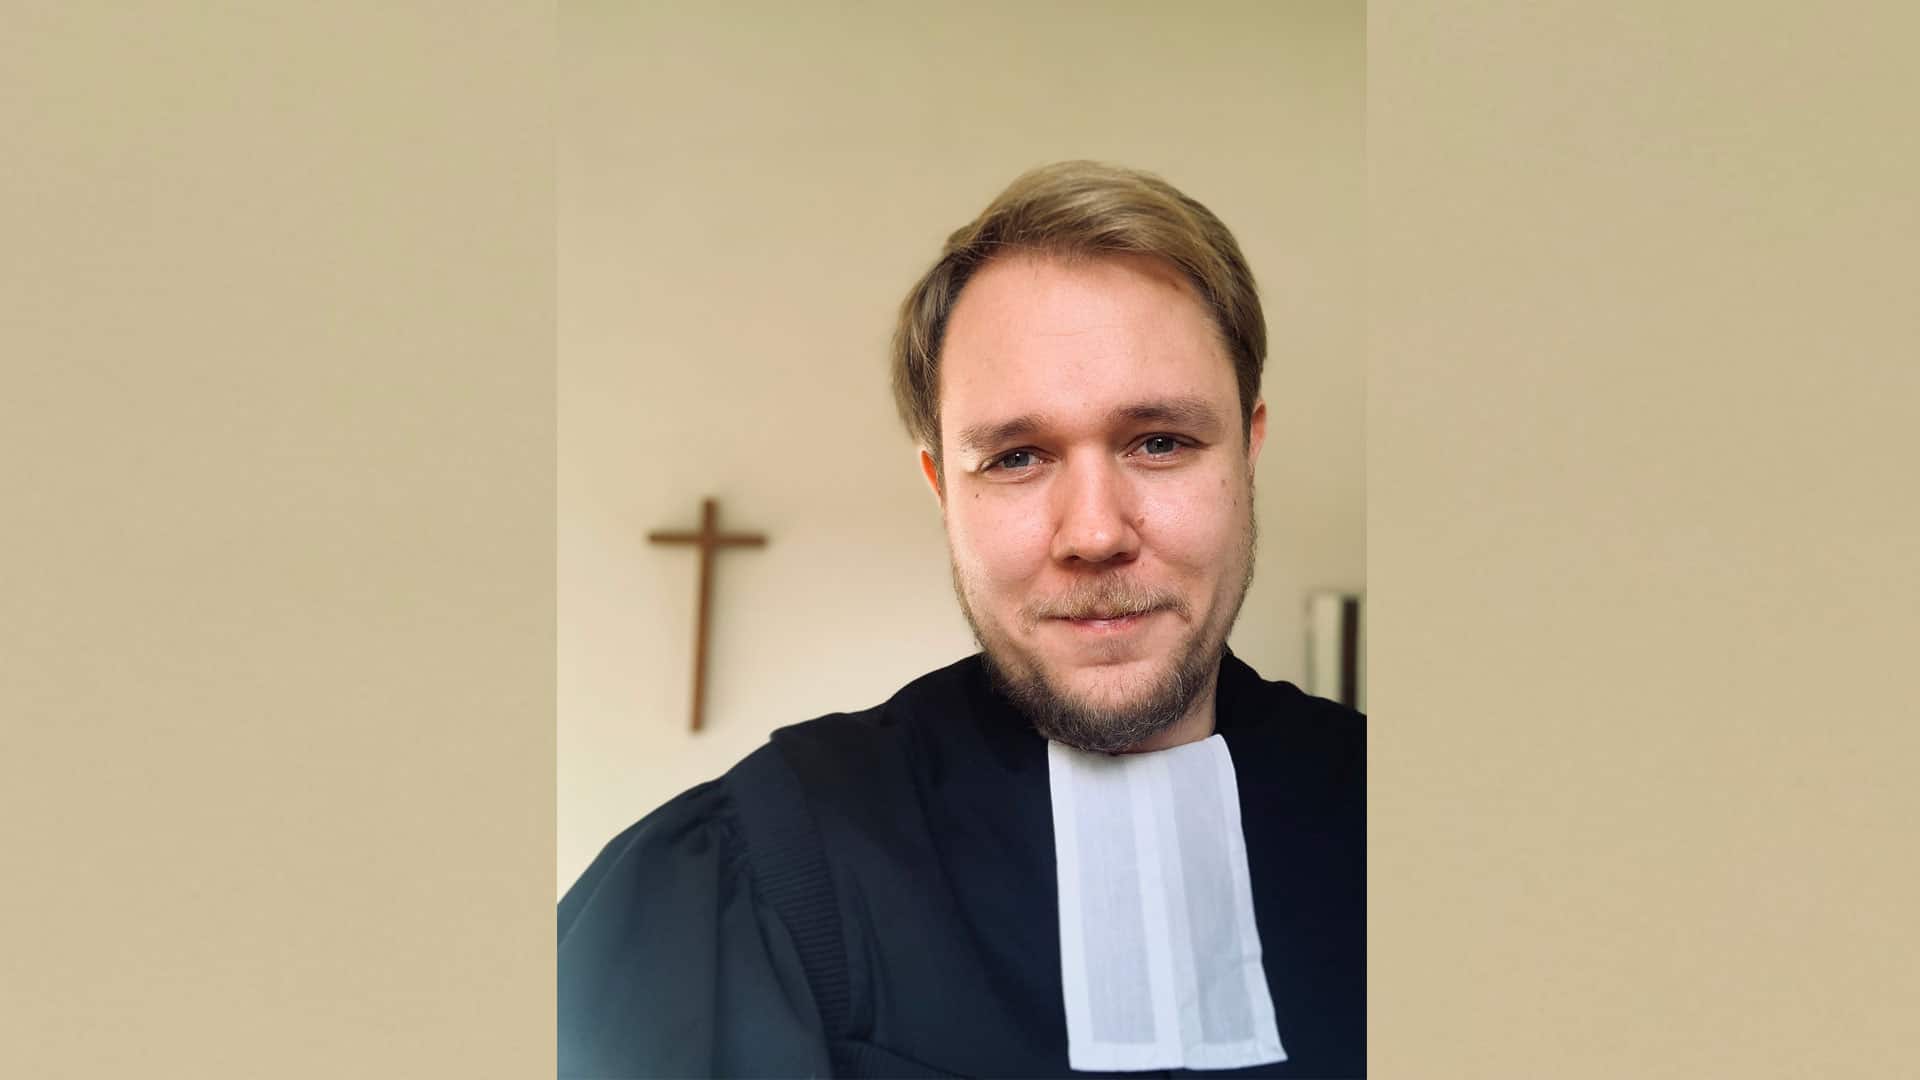 Pfarrer Nico Ballmann bietet auf seinem Instagram-Kanal unter anderem Andachten und einen Podcast an